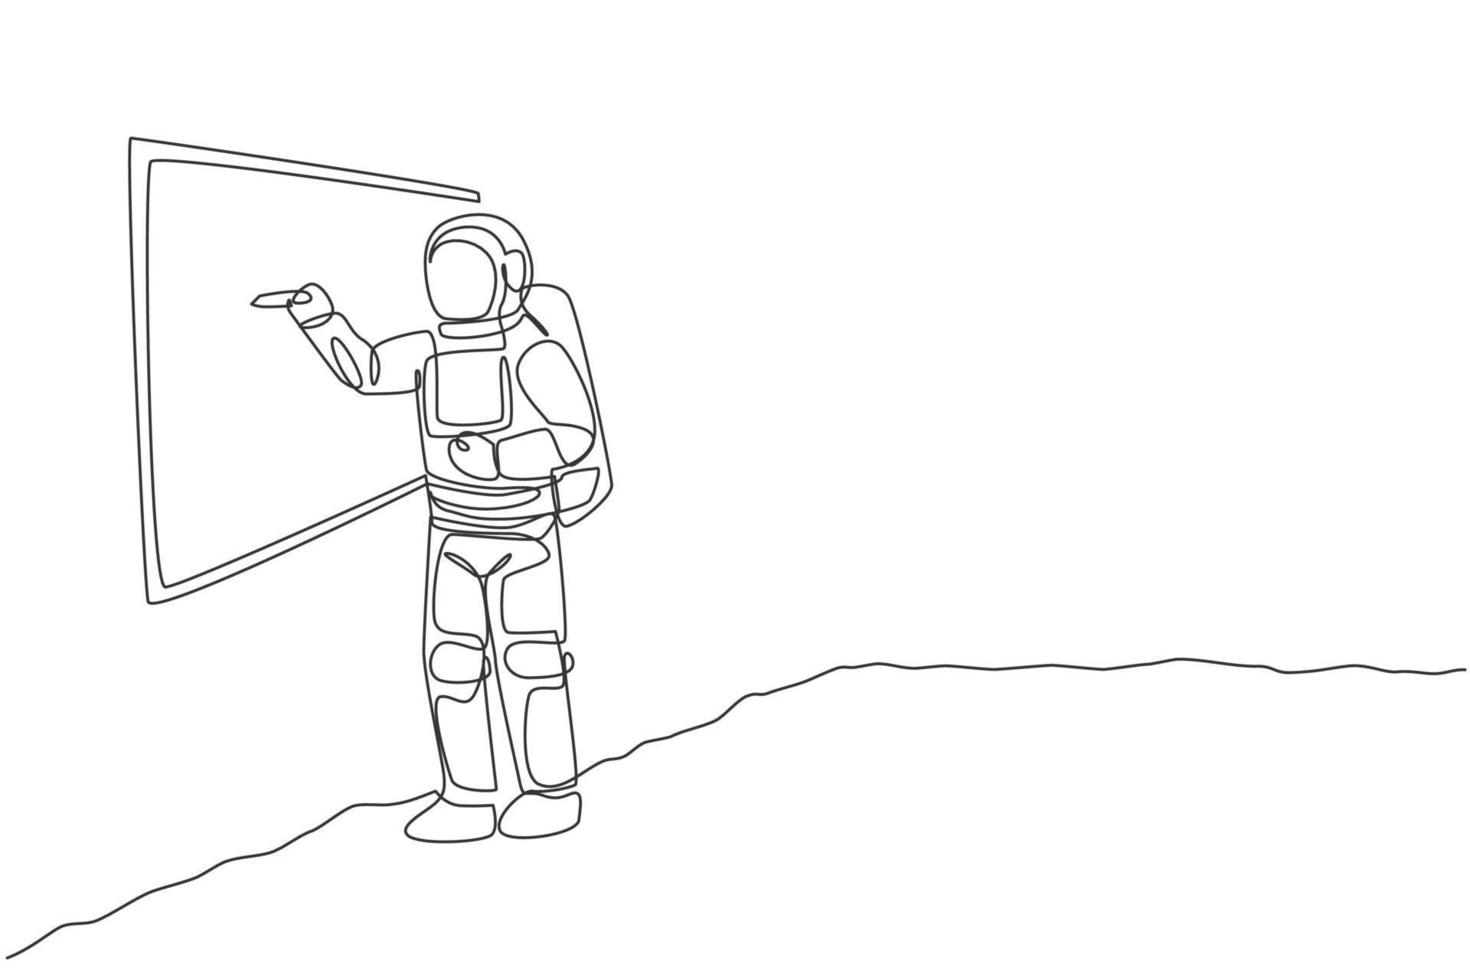 un disegno a tratteggio continuo di un giovane astronauta che spiega la formula e scrive sulla lavagna sulla superficie lunare. concetto di spazio galassia cosmica. illustrazione vettoriale di disegno grafico di disegno grafico a linea singola dinamica